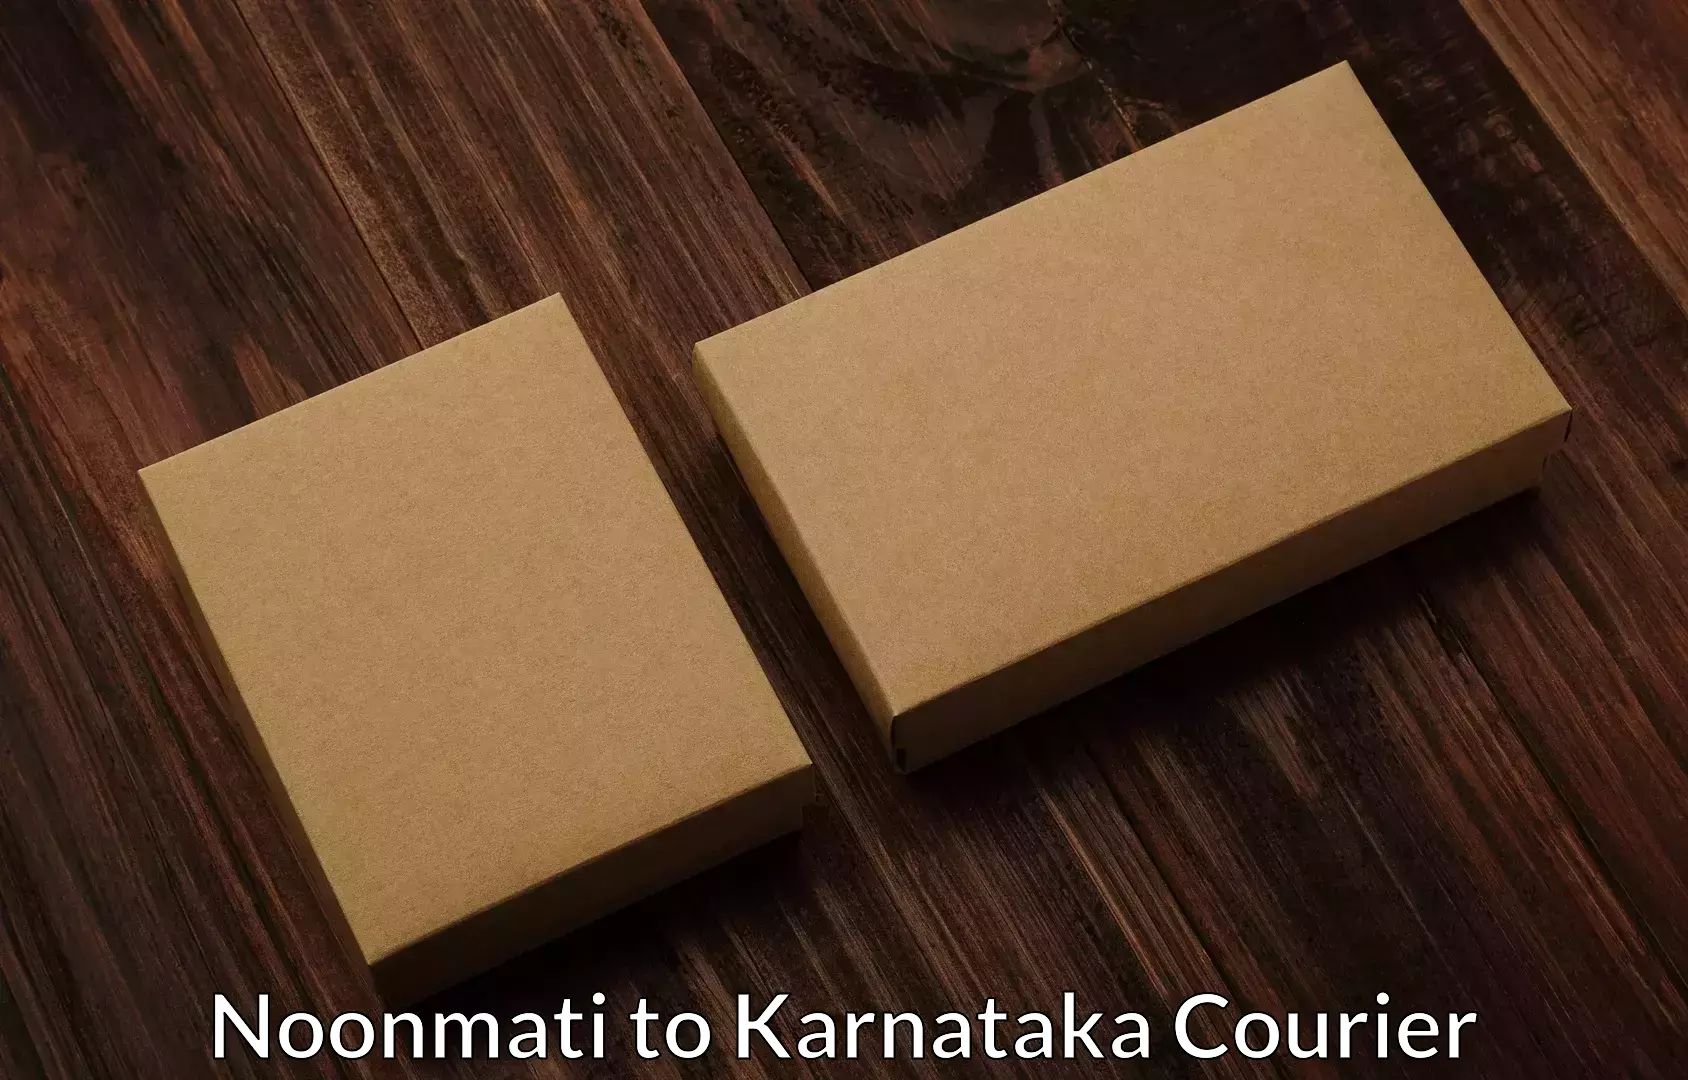 Furniture moving and handling Noonmati to Karnataka